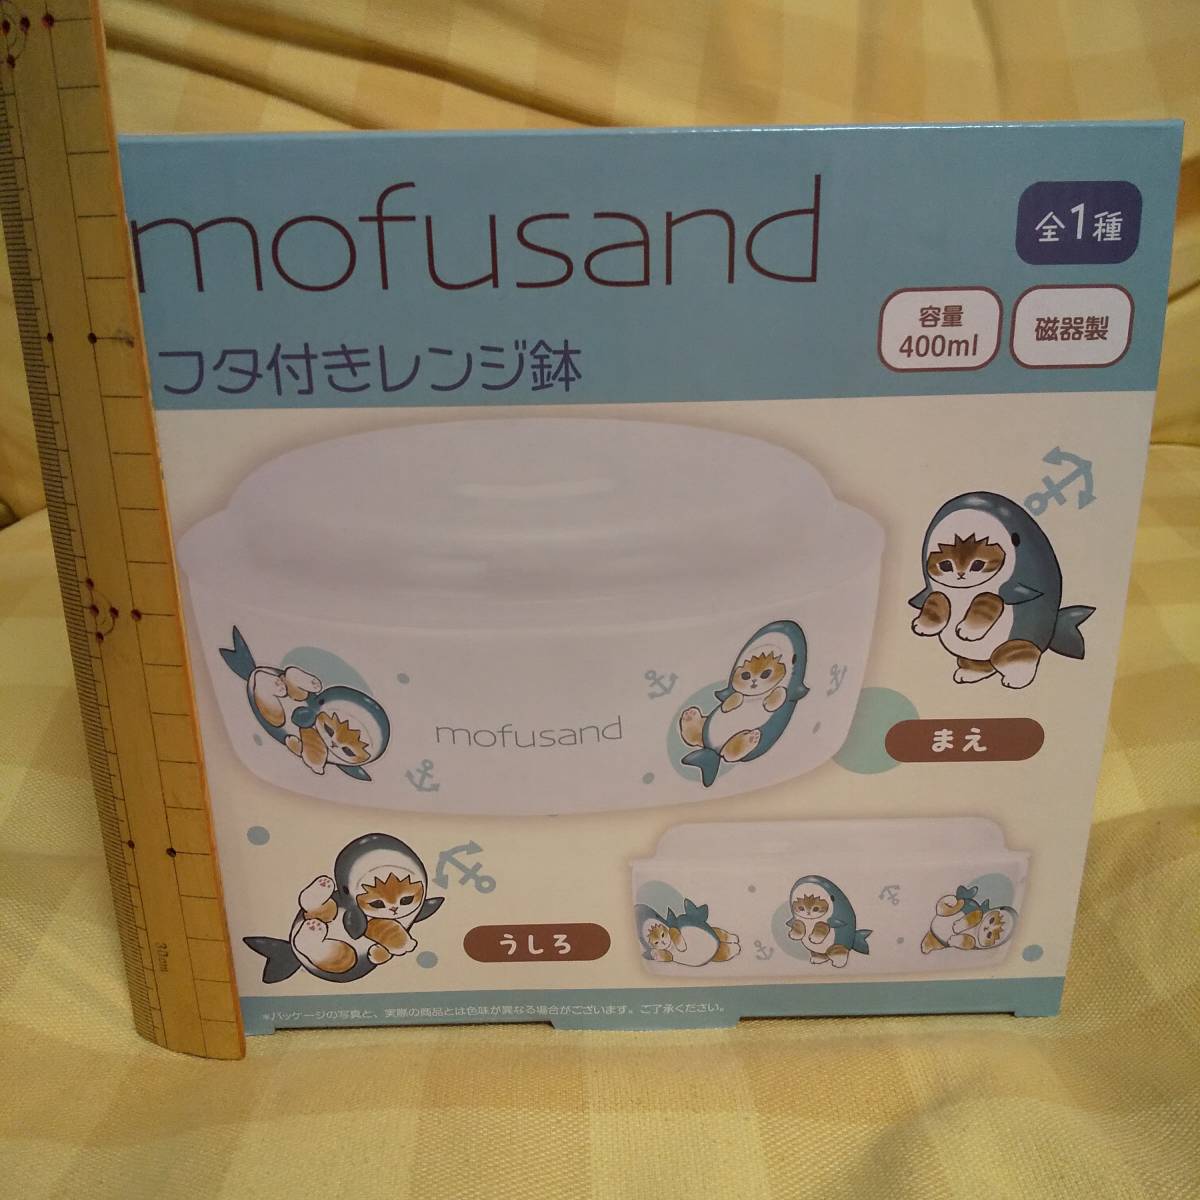  стоимость доставки 710 иен ~ новый товар нераспечатанный mofusandmof Sand same... крышка имеется плита горшок 